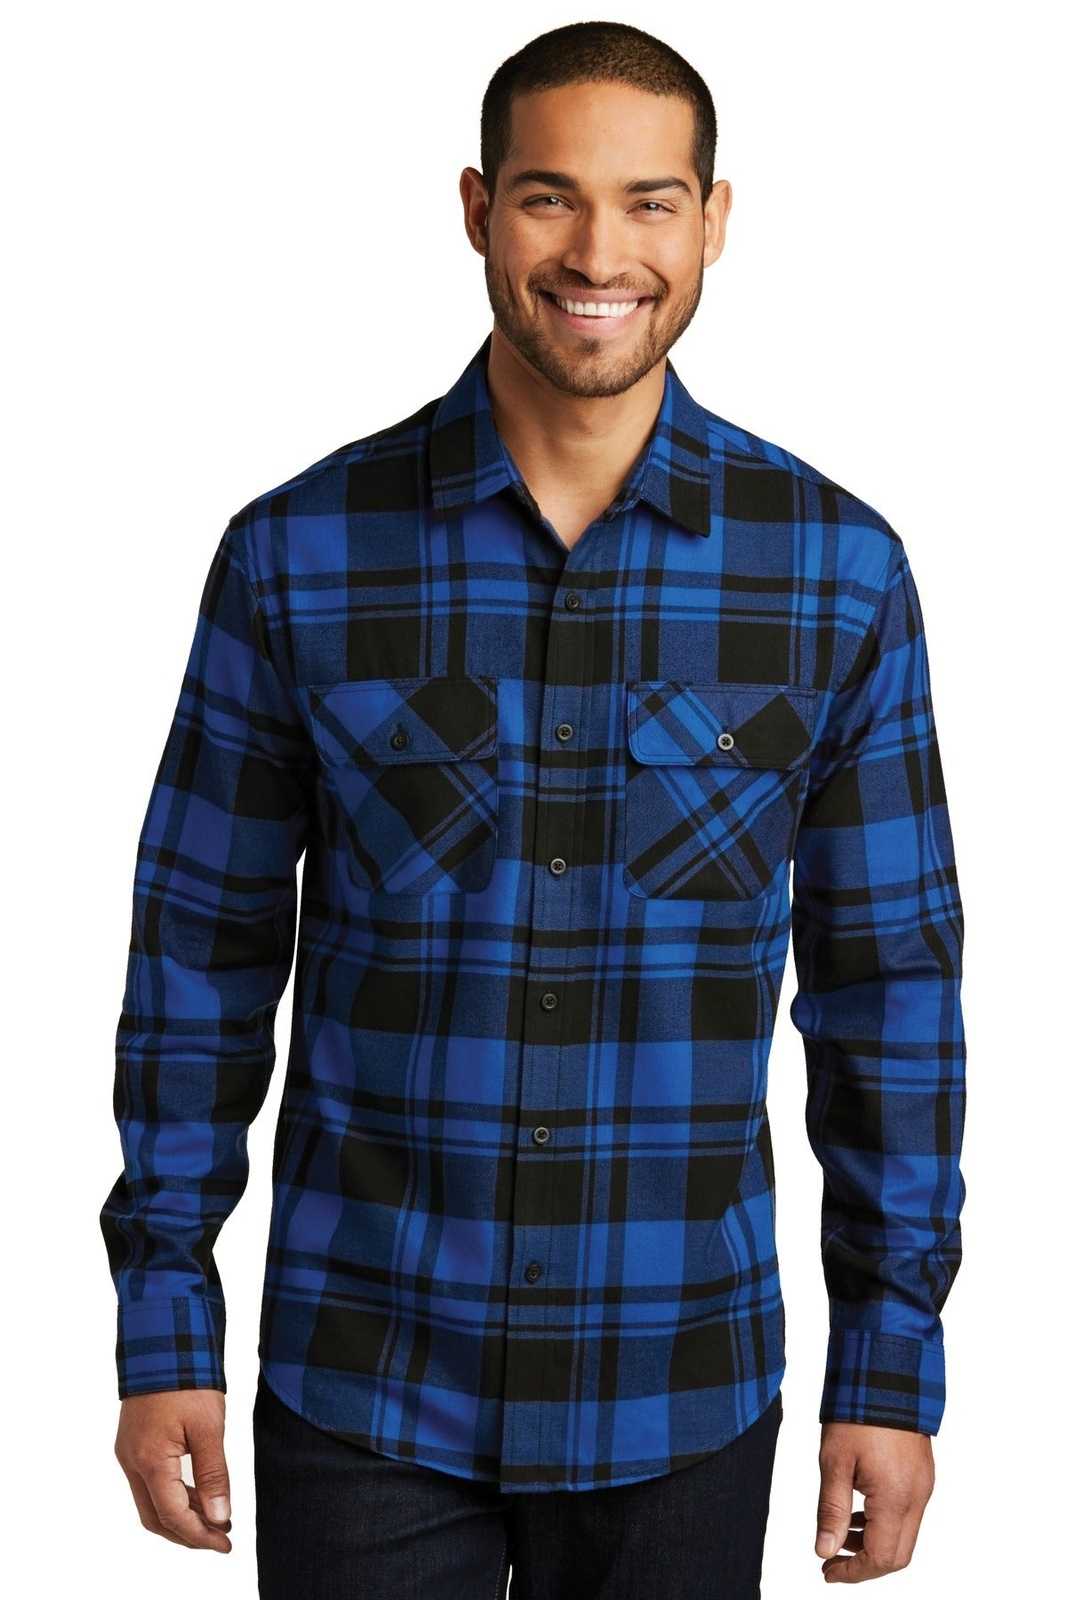 Port Authority W668 Plaid Flannel Shirt - Royal Black - HIT a Double - 1